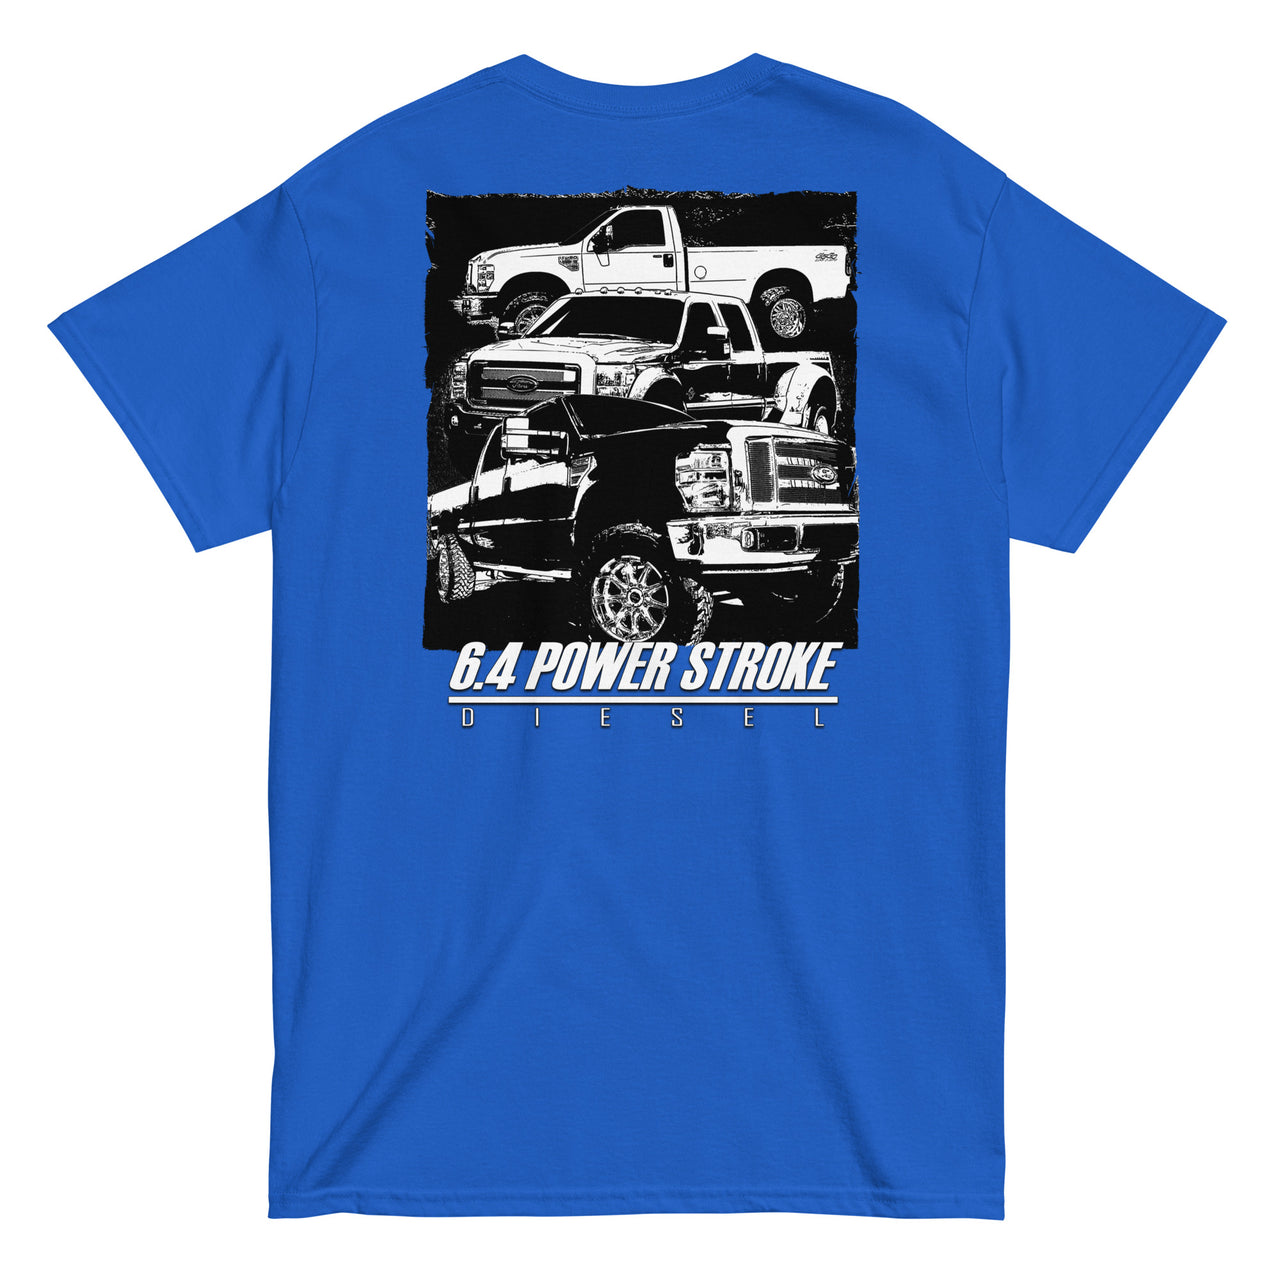 6.4 Power Stroke Trucks t-shirt in blue